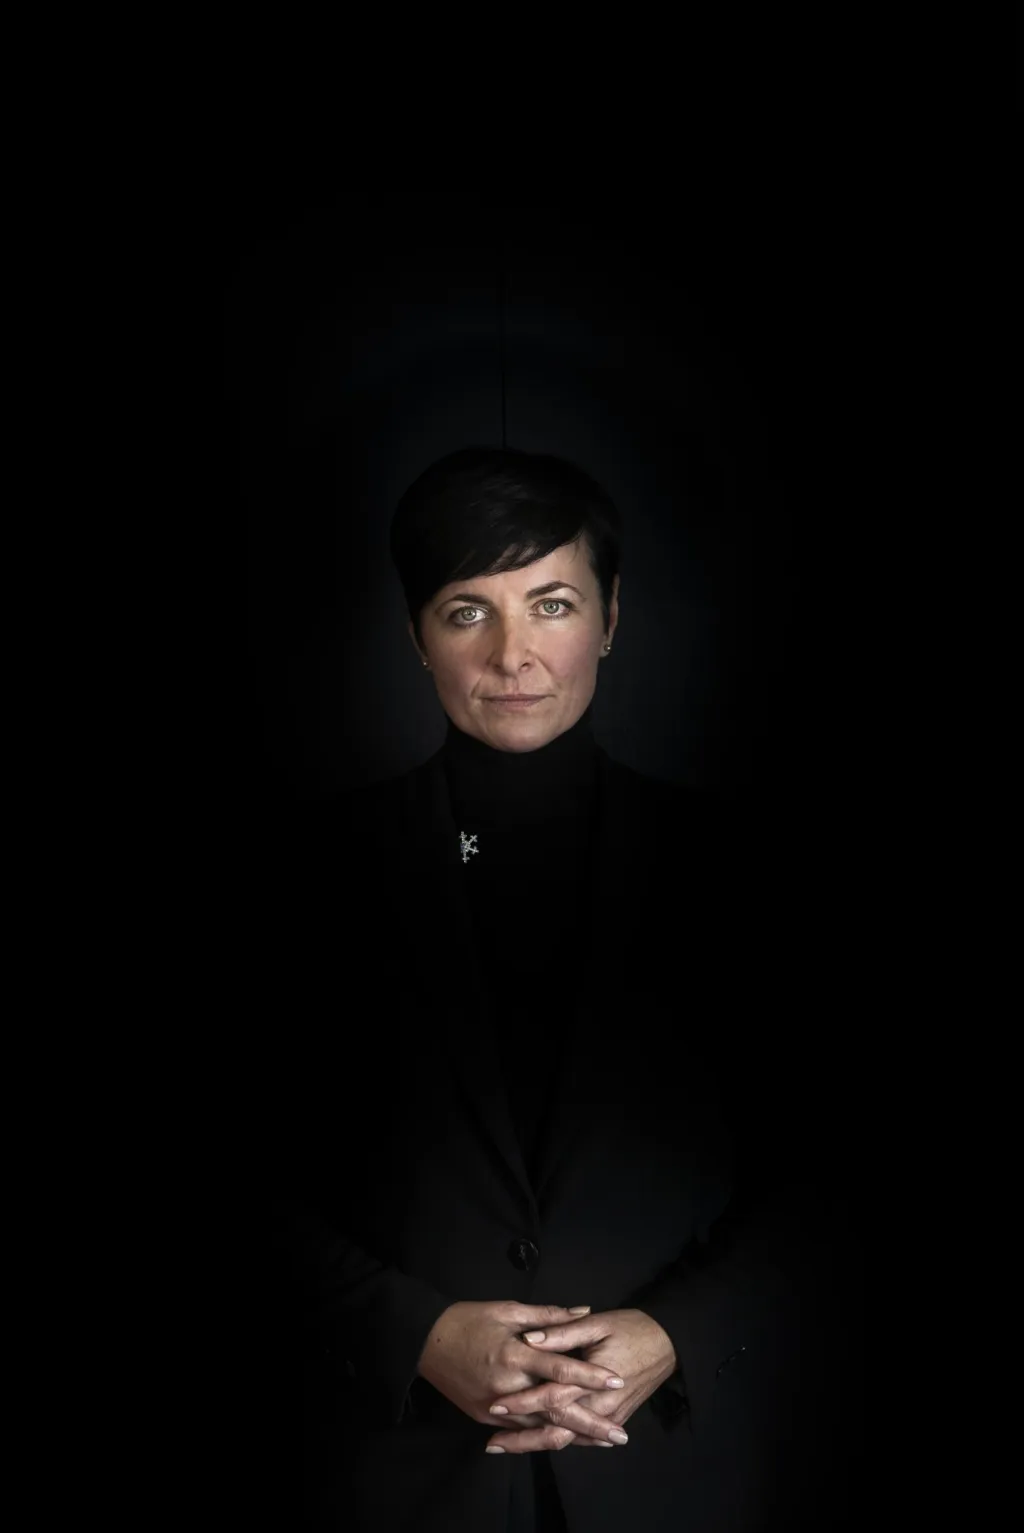 3. místo v kategorii „Portrét“ vybojoval Michael Tomeš za fotografii „Žena v černé“, na kterém je vyobrazena vrchní státní zástupkyně Lenka Bradáčová.